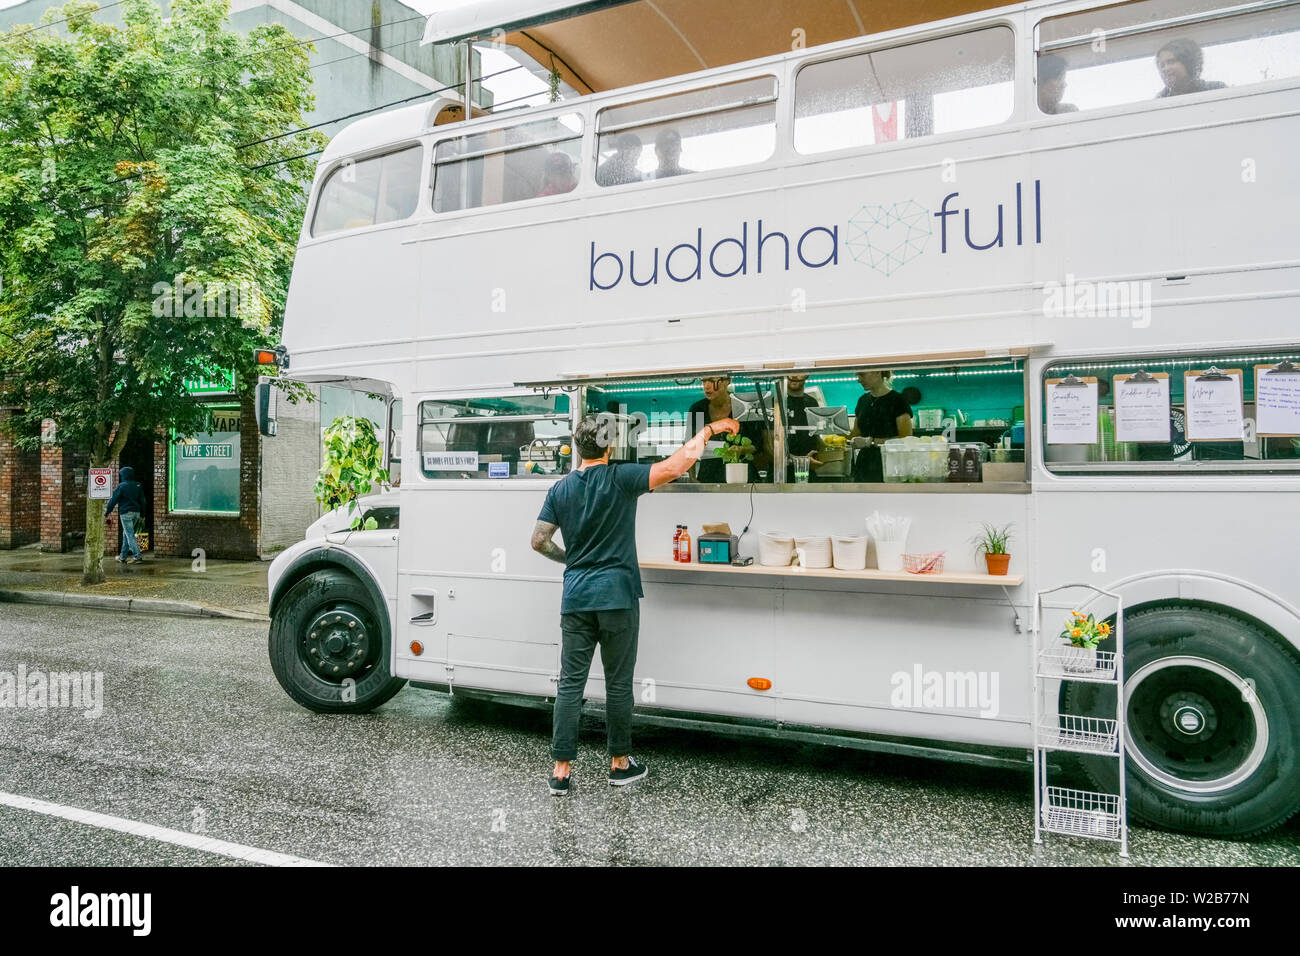 Pieno di buddha, double decker bus, cibo carrello, la Giornata senza automobili, Unità commerciale, Vancouver, British Columbia, Canada Foto Stock